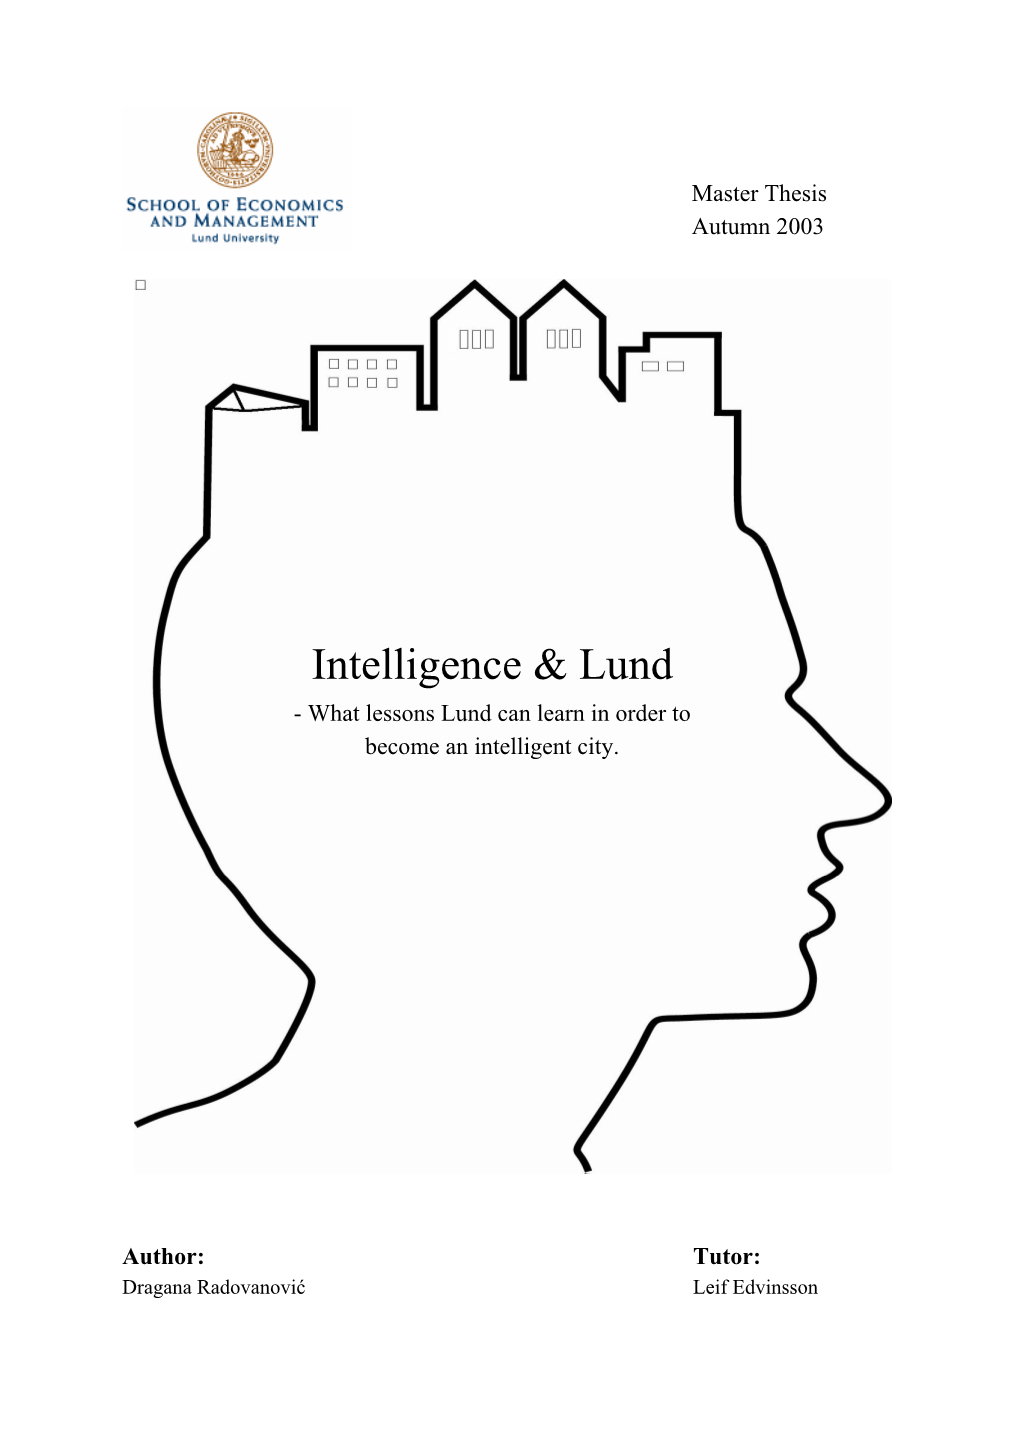 Intelligence & Lund